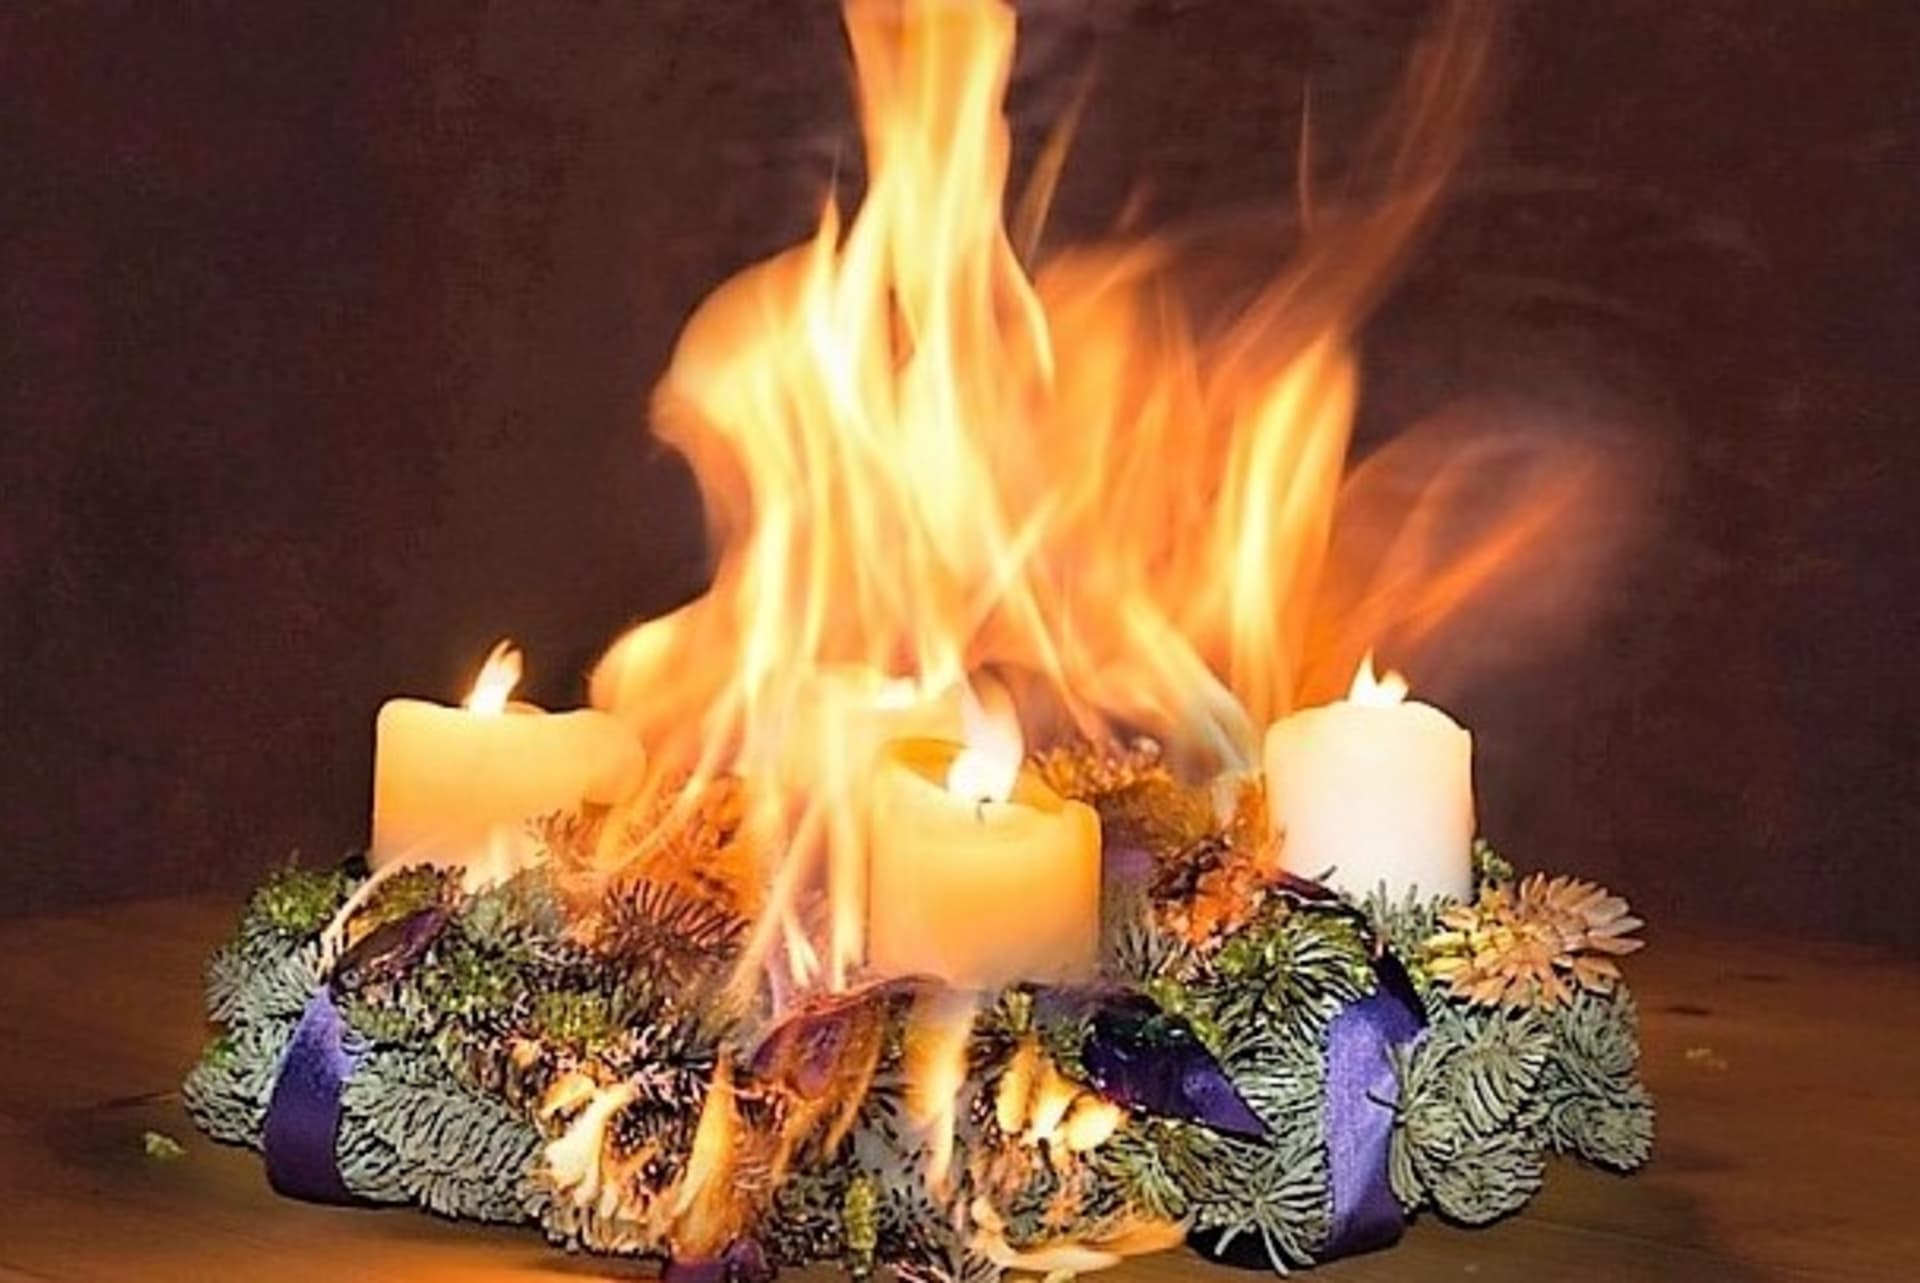 Adventní věnec bez ochranných podložek pod svíčkami může sloužit výhradně jako dekorace a v žádném případě svíčky nezapalujte Jinak hrozí nebezpčí požáru.